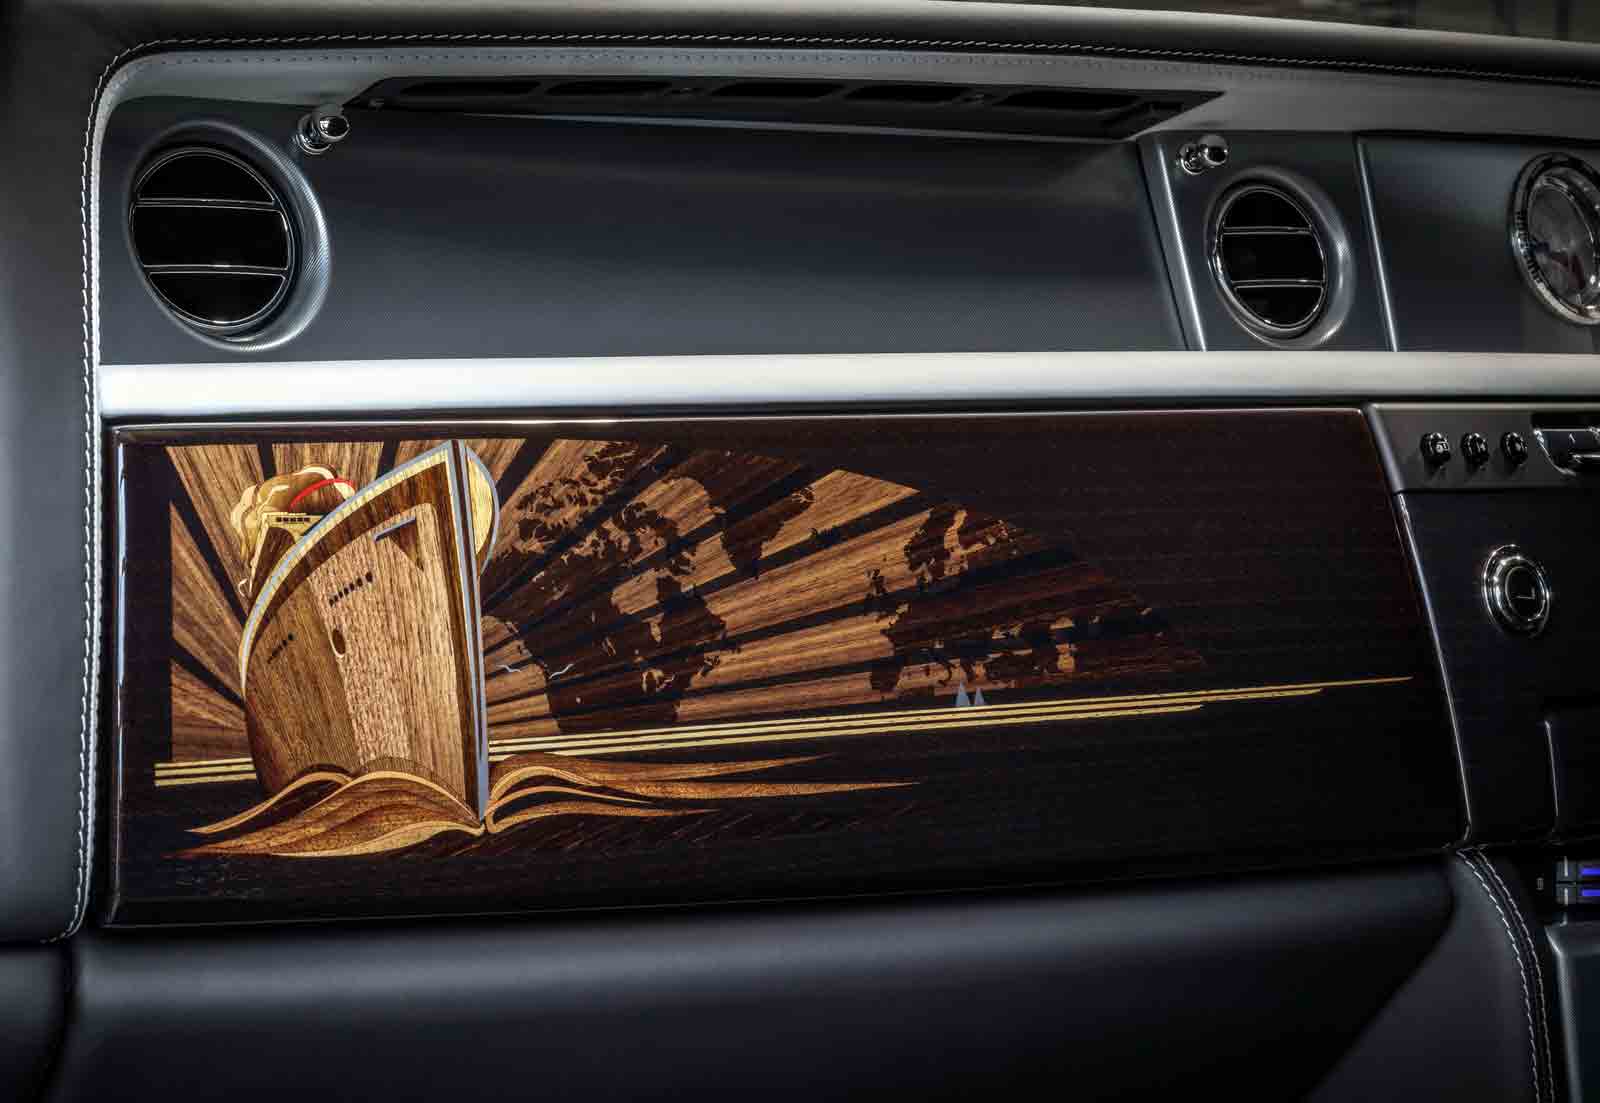 Mobil Baru, phantom-vii-dash: Rolls-Royce Phantom Generasi VII, Edisi yang Terakhir